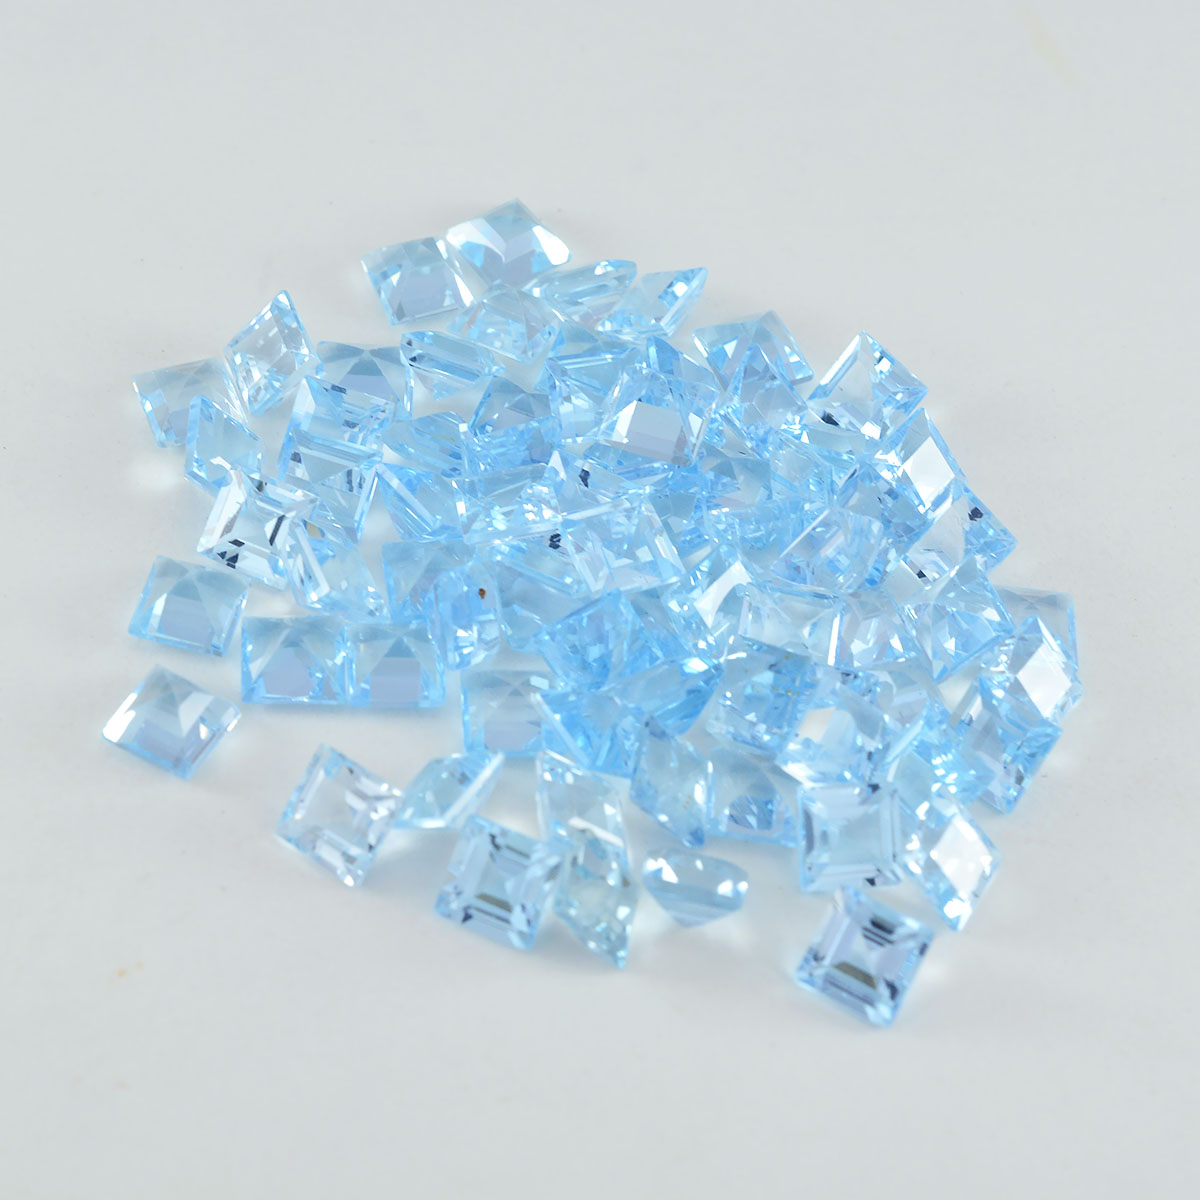 riyogems 1шт натуральный голубой топаз ограненный 4х4 мм квадратной формы драгоценный камень качества А1